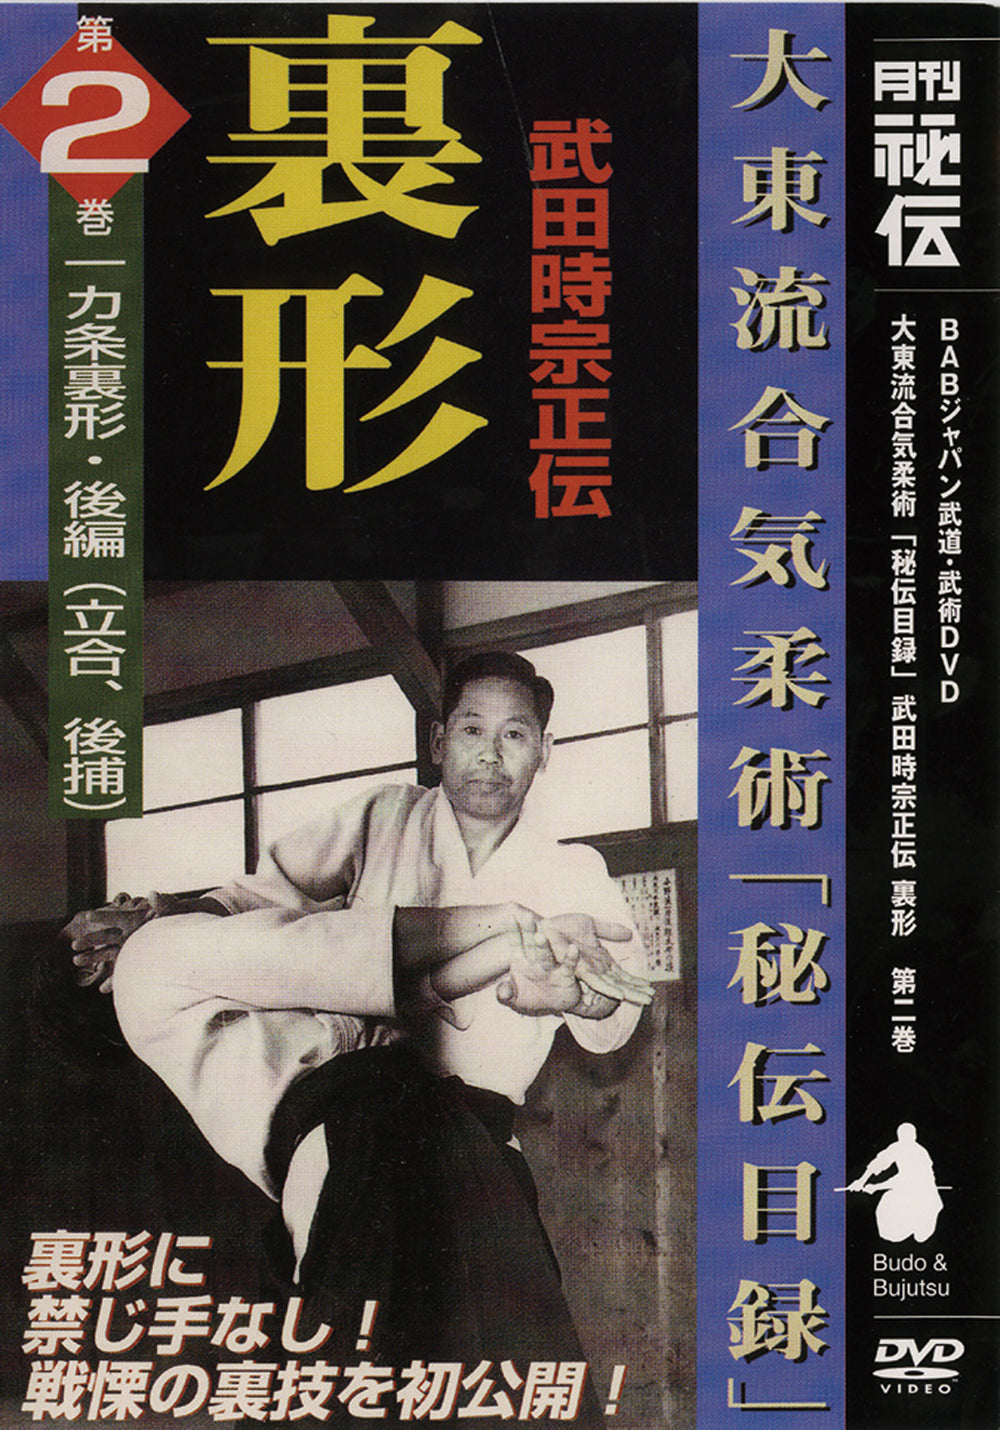 Daito Ryu Aikijujutsu: Técnicas Ikkajo Ura DVD 2